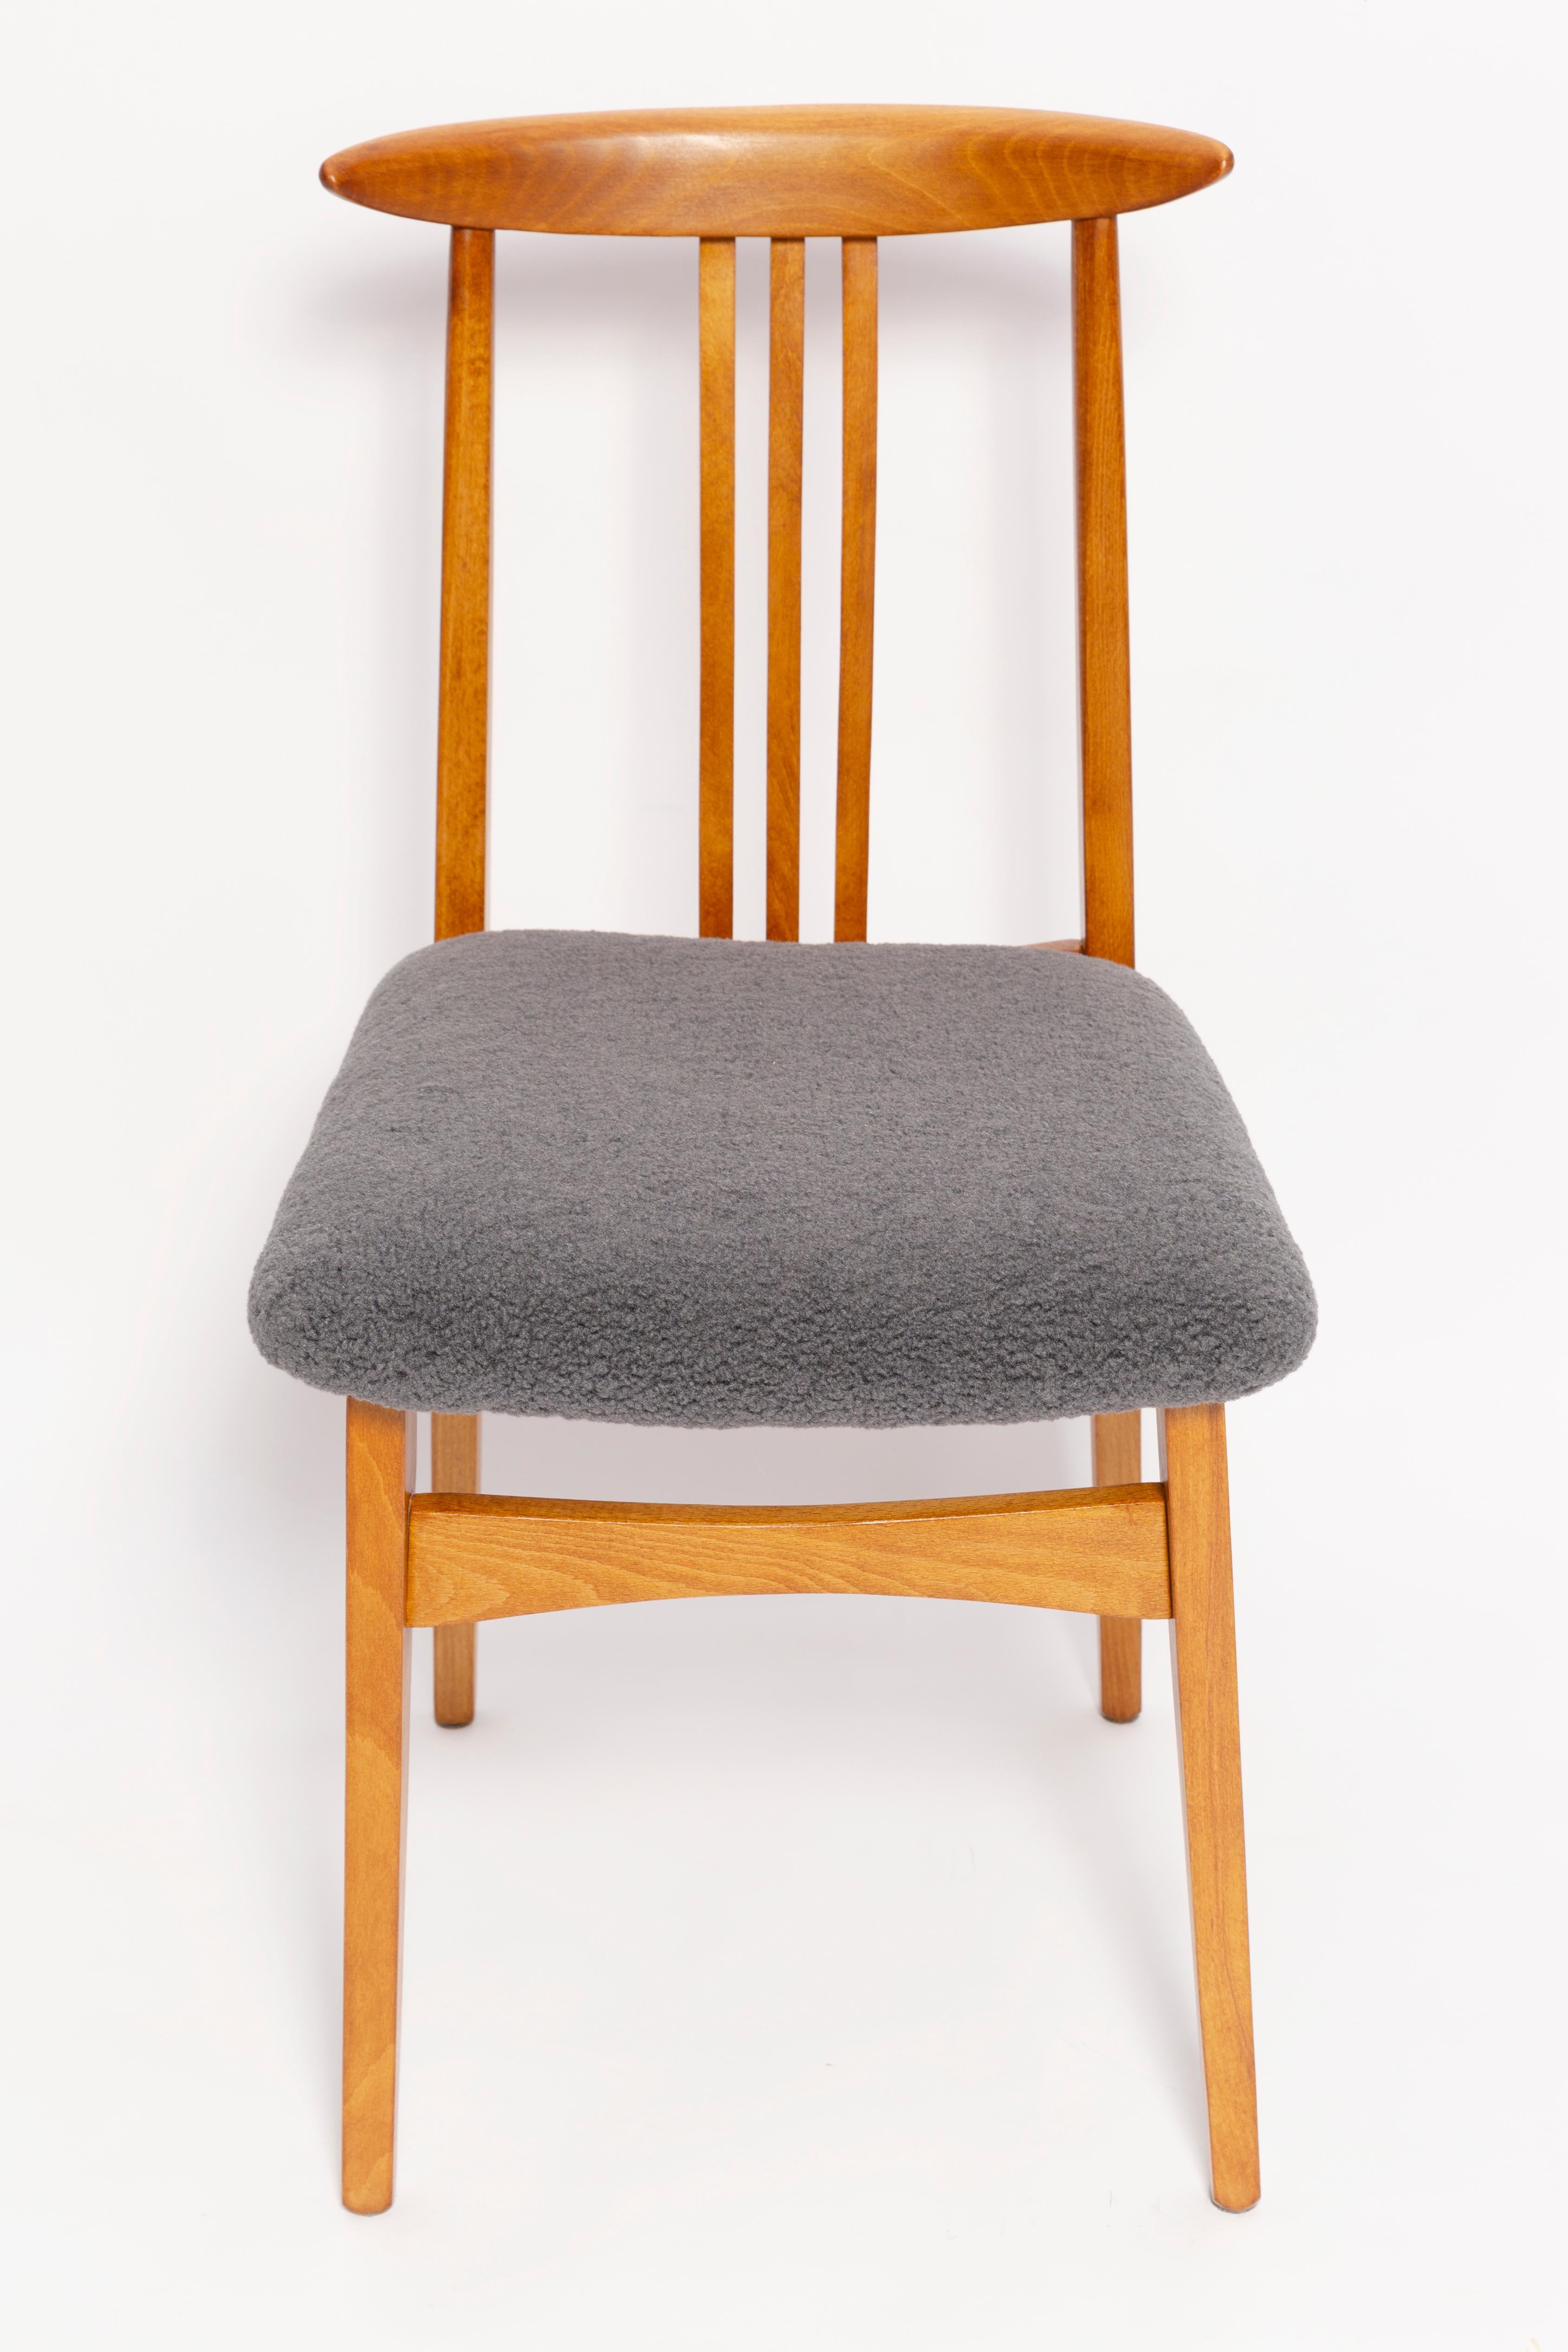 Une belle chaise en hêtre conçue par M. Beeche, type 200 / 100B. Fabriqué par le Centre industriel du meuble d'Opole à la fin des années 1960 en Pologne. La chaise a fait l'objet d'une rénovation complète de la menuiserie et de la tapisserie. Sièges